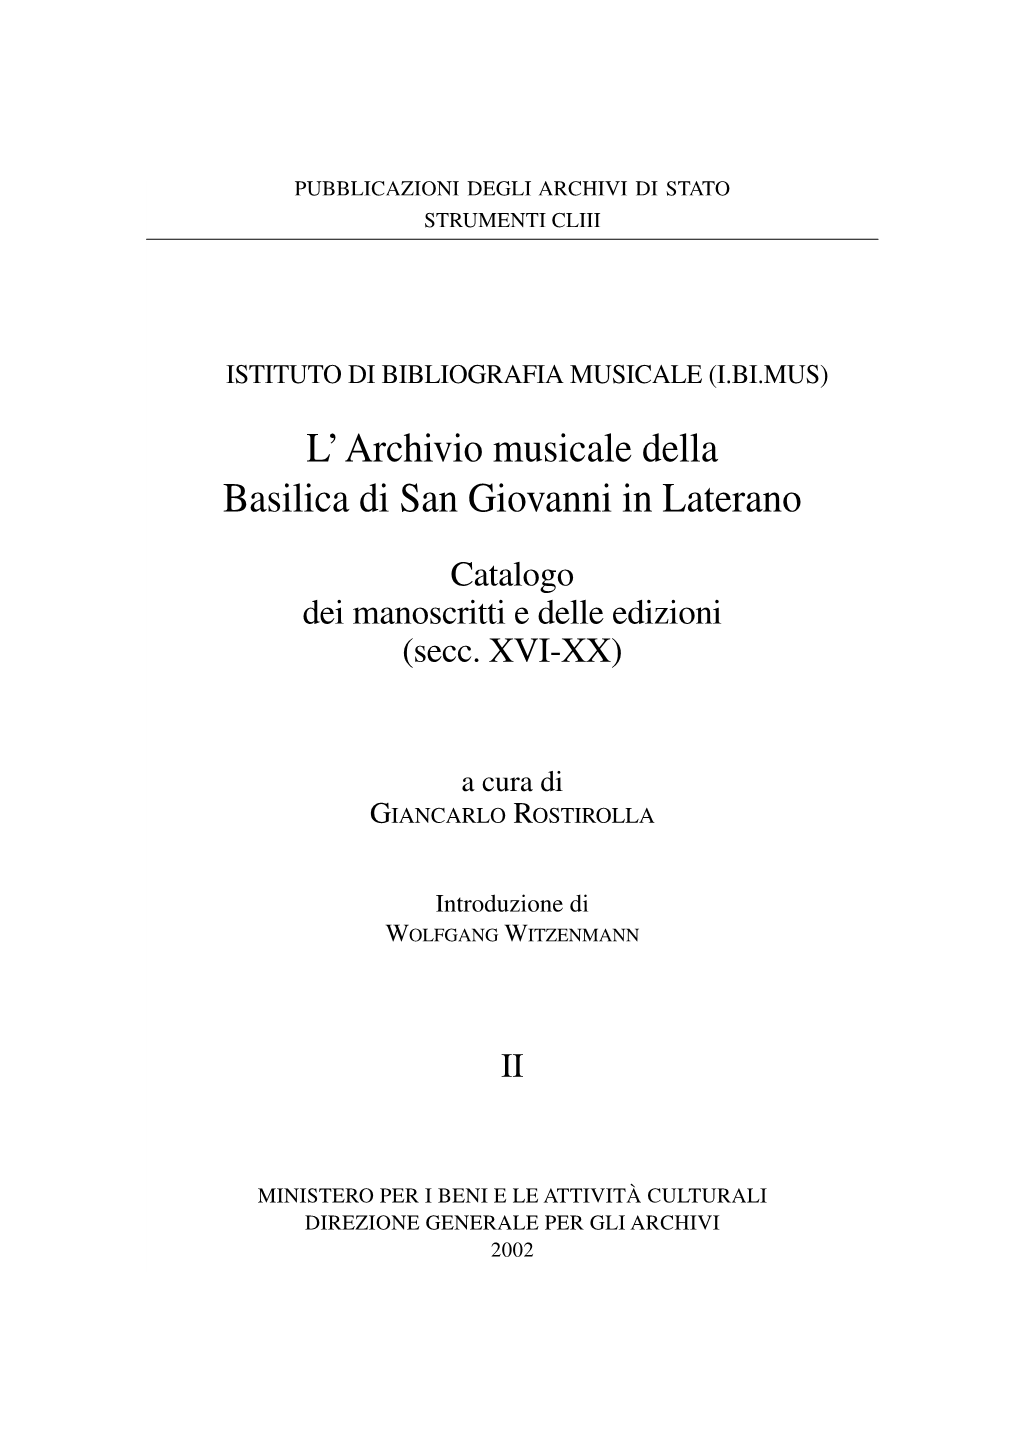 L' Archivio Musicale Della Basilica Di San Giovanni in Laterano Catalogo